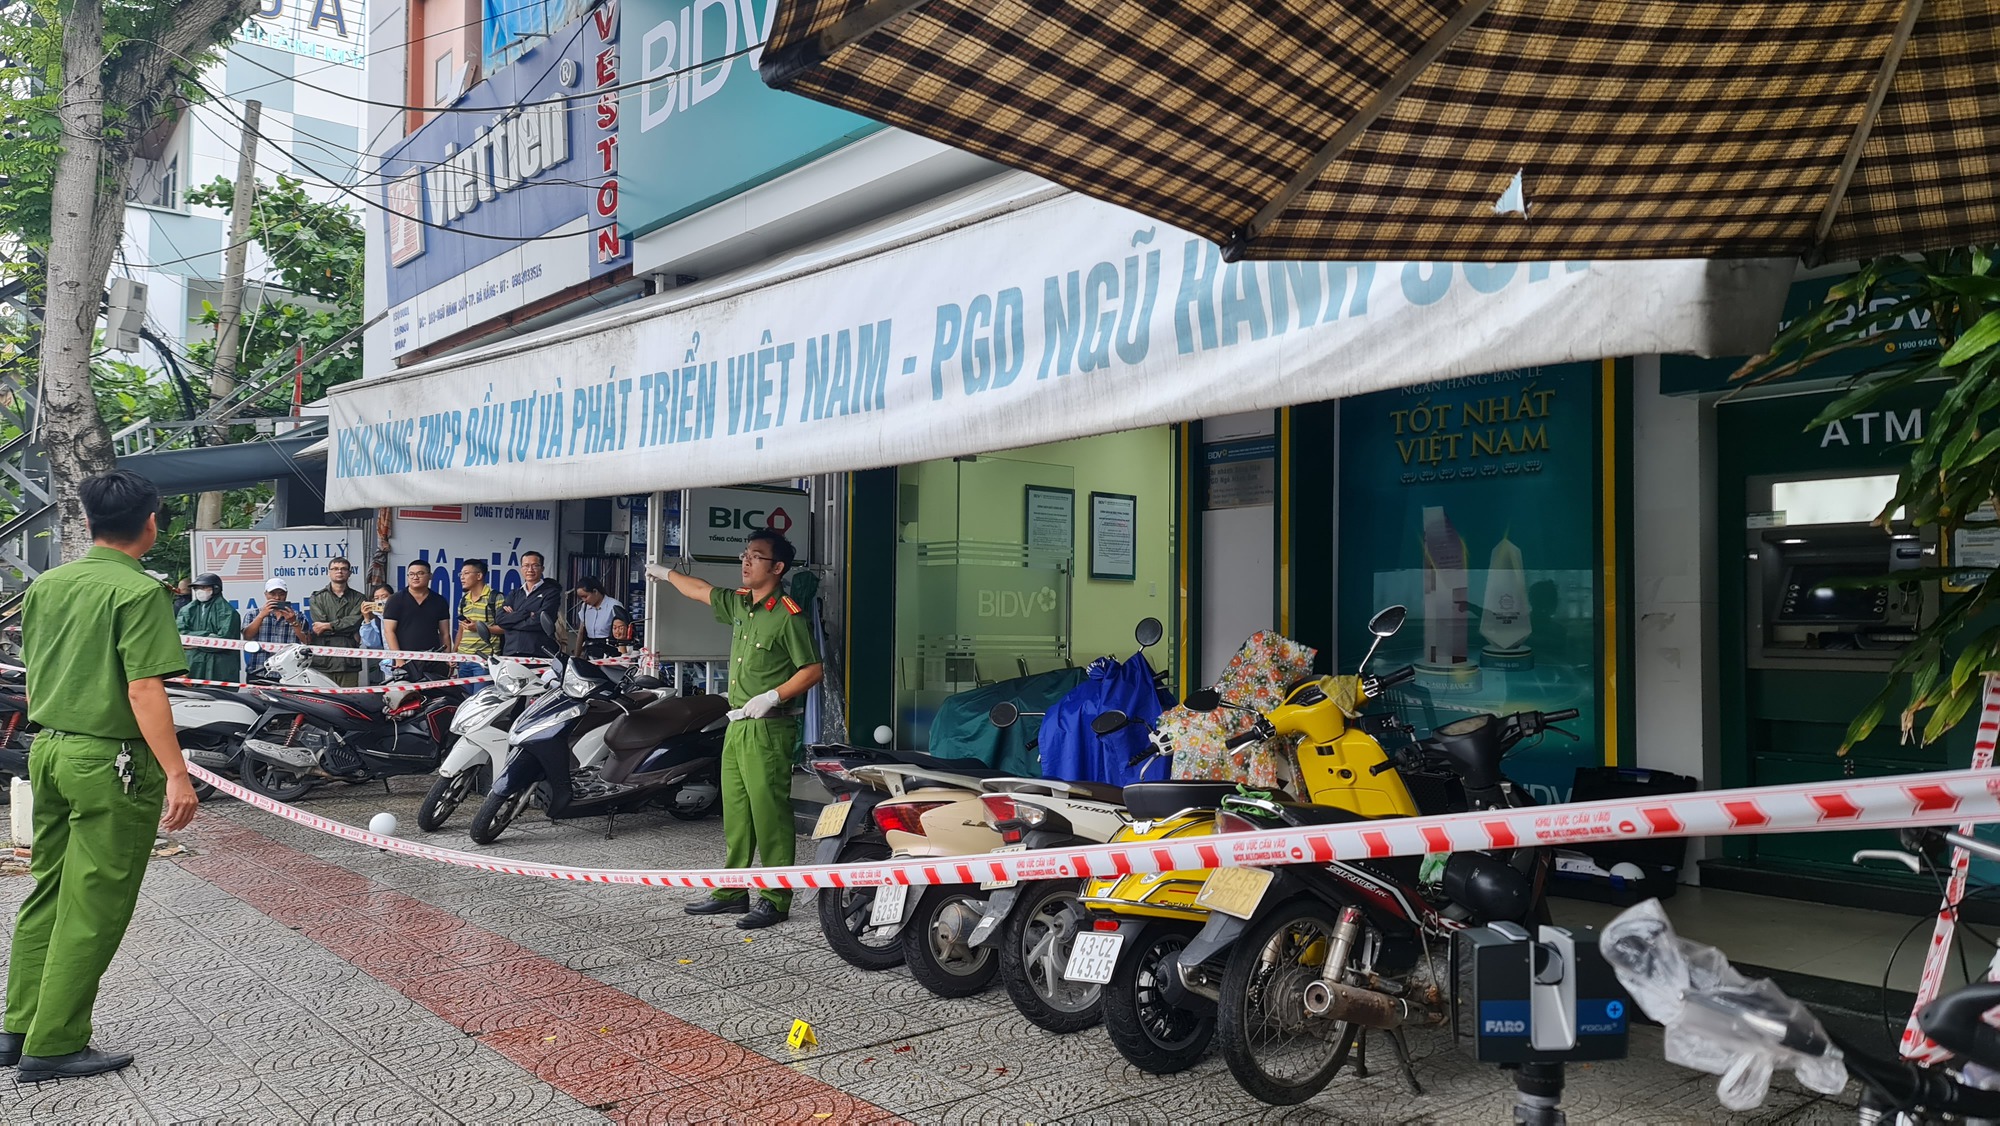 NÓNG: Cướp ngân hàng tại Đà Nẵng, 1 bảo vệ bị thương rất nặng - Ảnh 2.